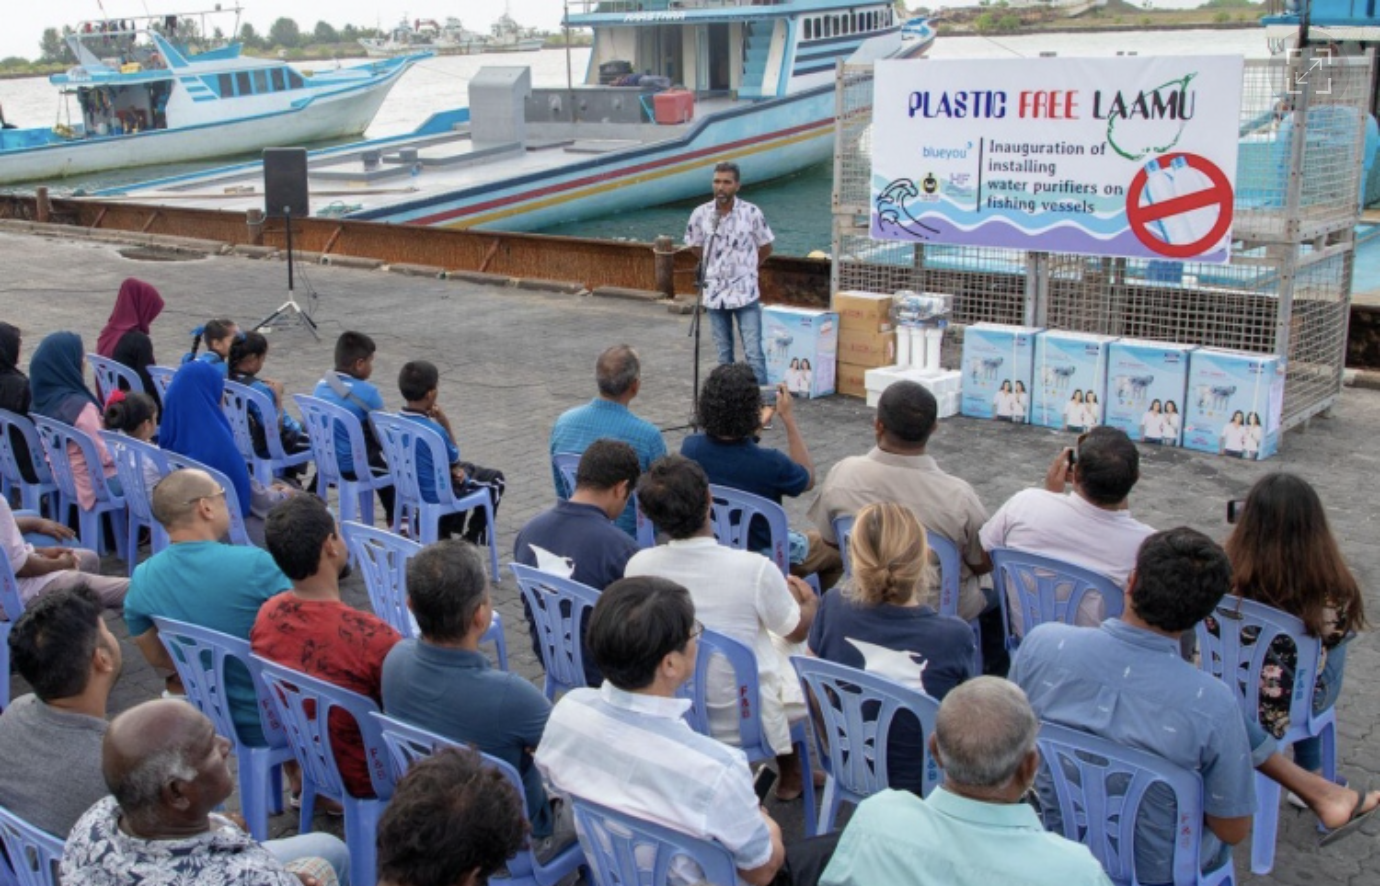 Inauguration of installing water purifiers on Laamu Atoll fishing vessels. PHOTO / BLUEYOU & HORIZON FISHERIES